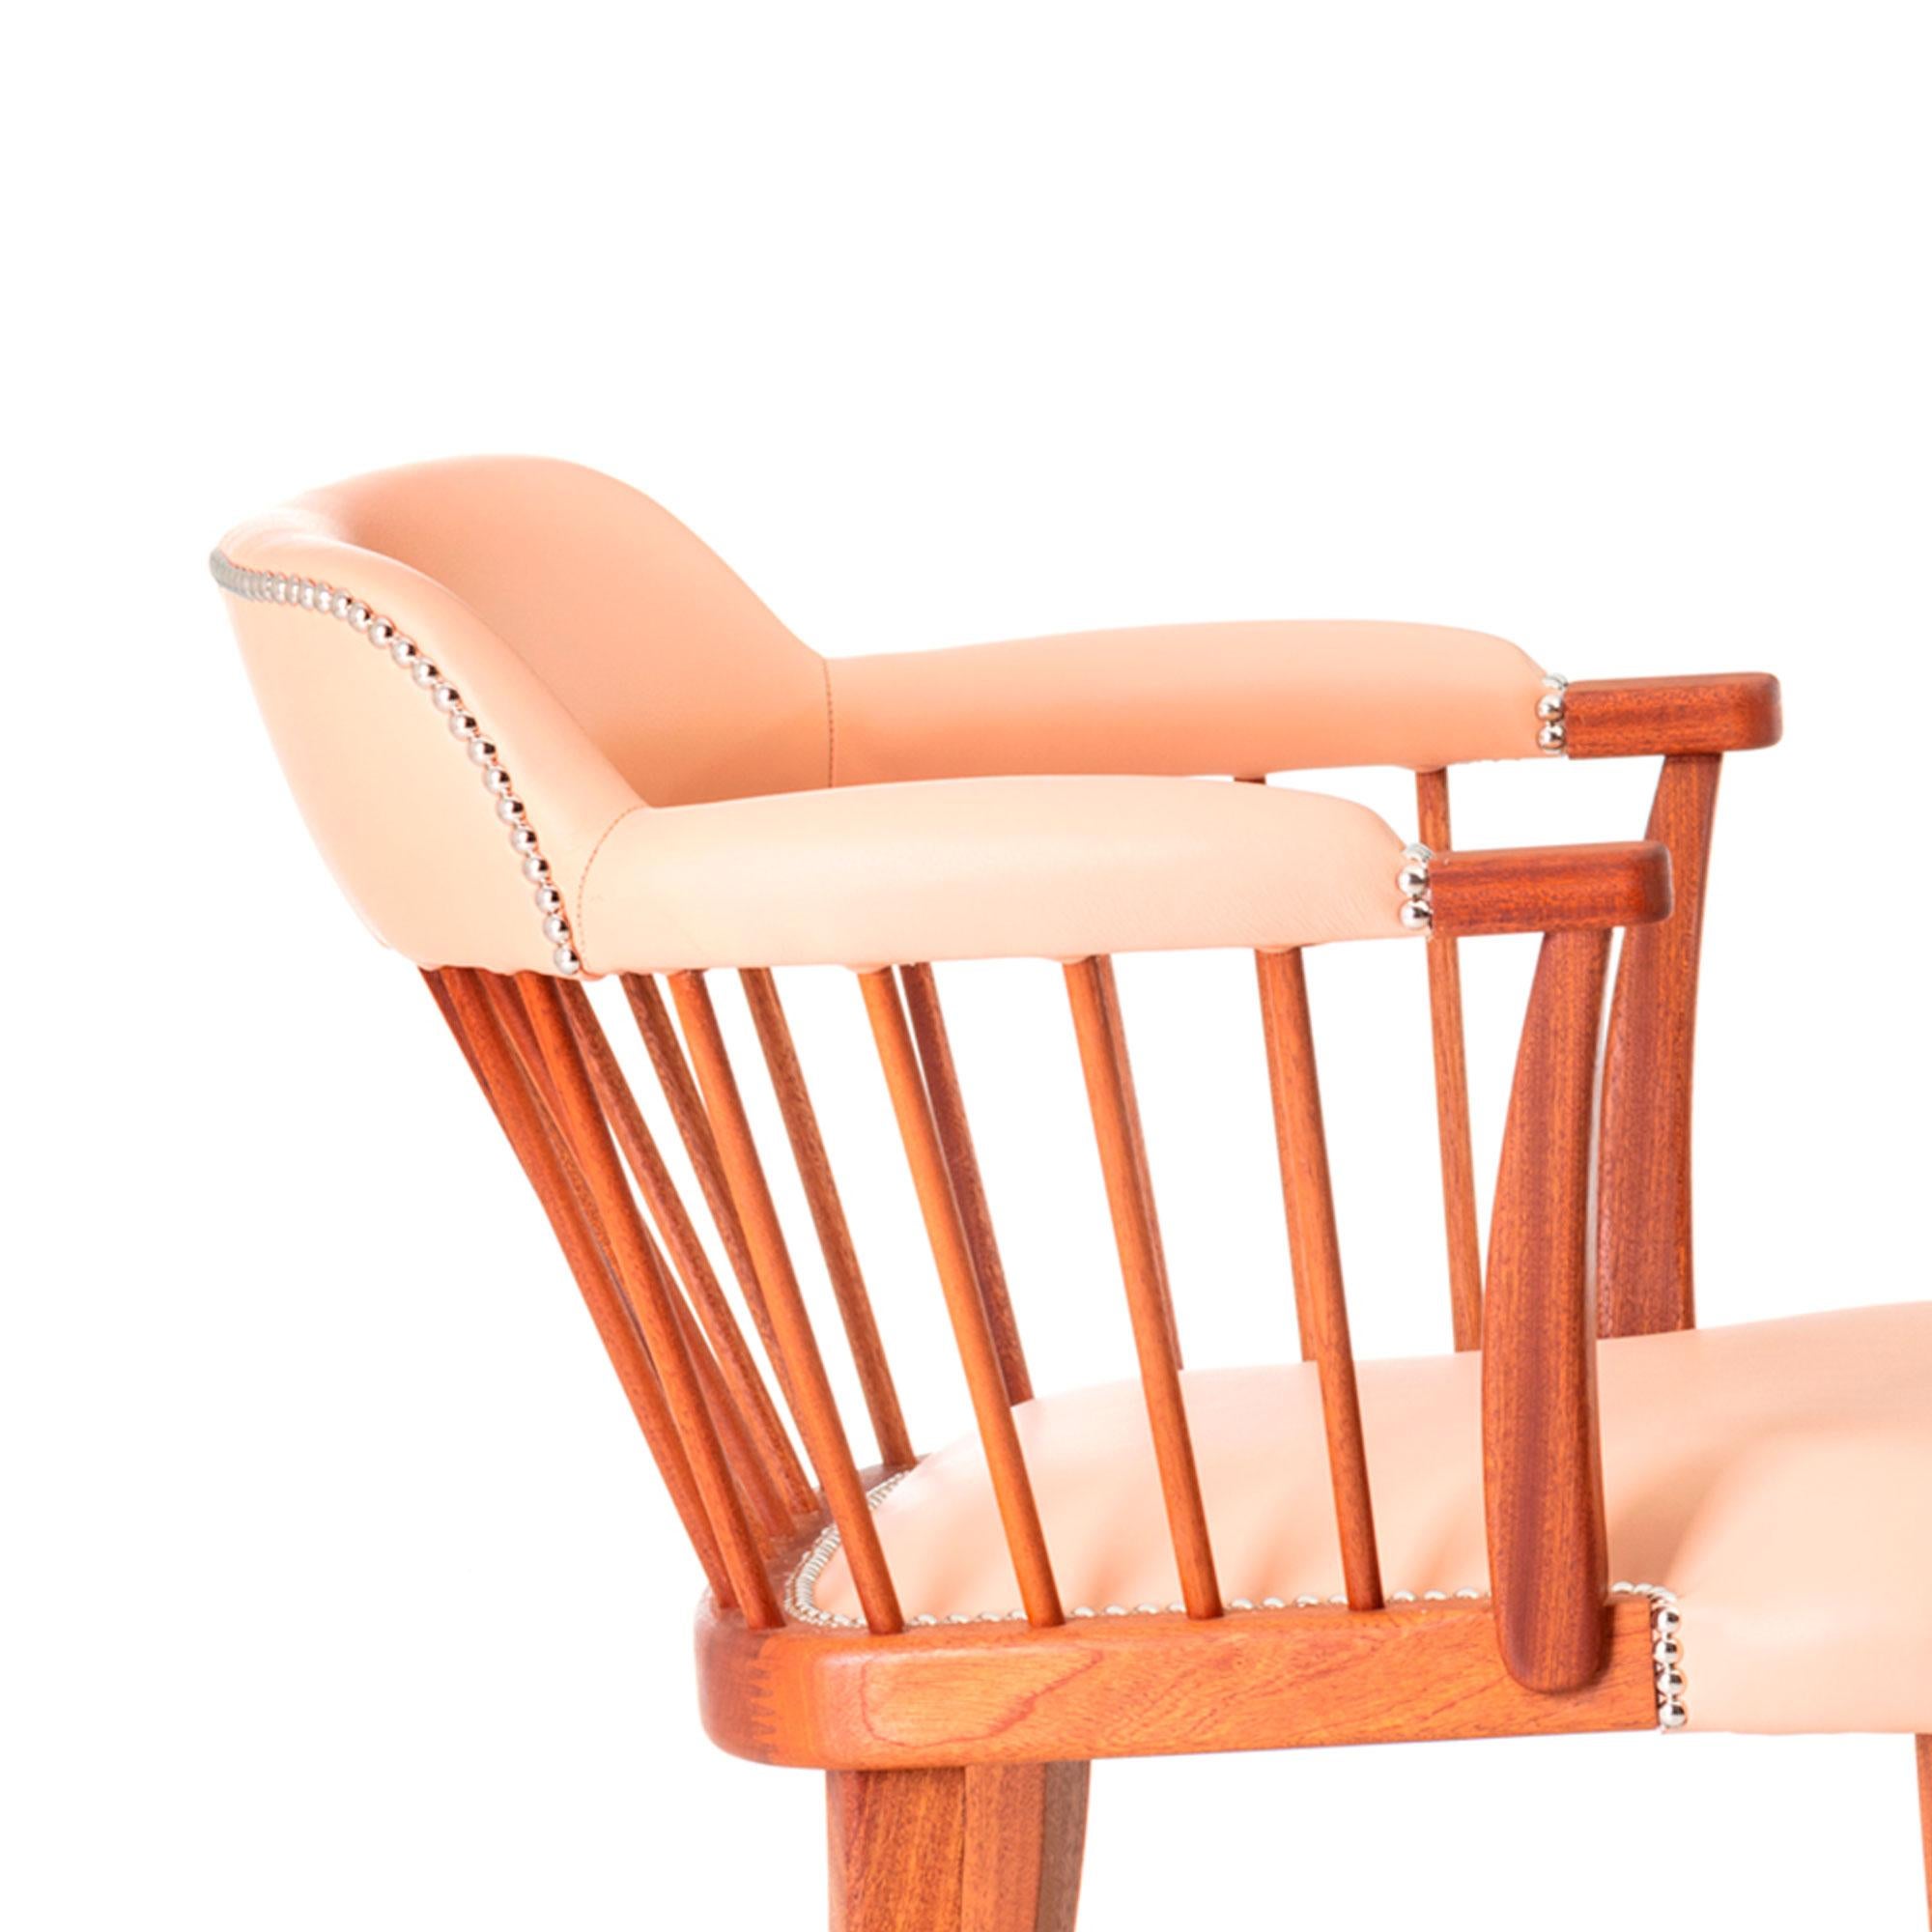 Oxford ist ein Originalentwurf des Architektur- und Innenarchitekturstudios DING DONG.
Ein zeitloser Stuhl aus Massivholz mit Lederpolsterung und Metalldetails.